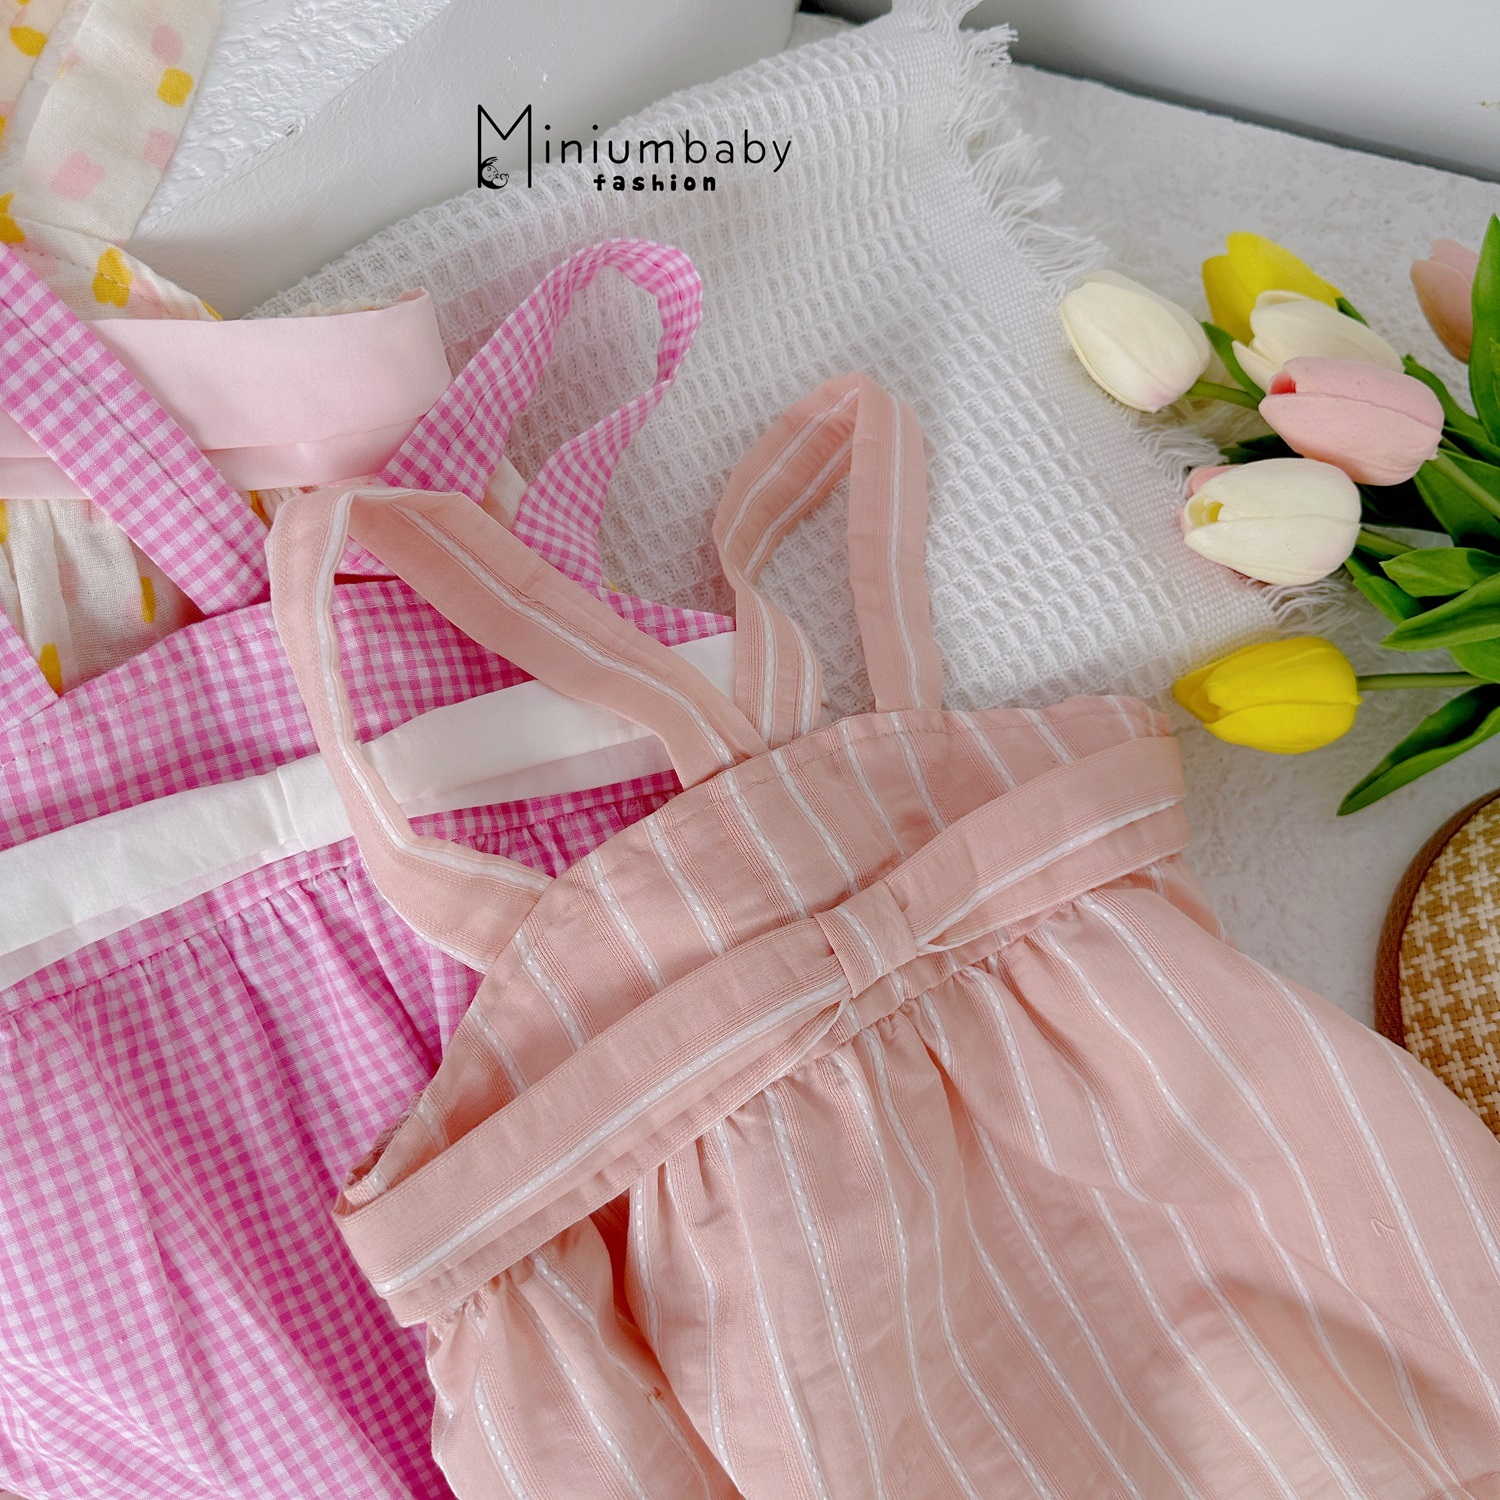 Bộ Babydoll 2 dây nơ ngực cho bé gái, set đồ mặc hè chất liệu 100% cotton thoáng khí mát mẻ Miniumbaby-SB1530